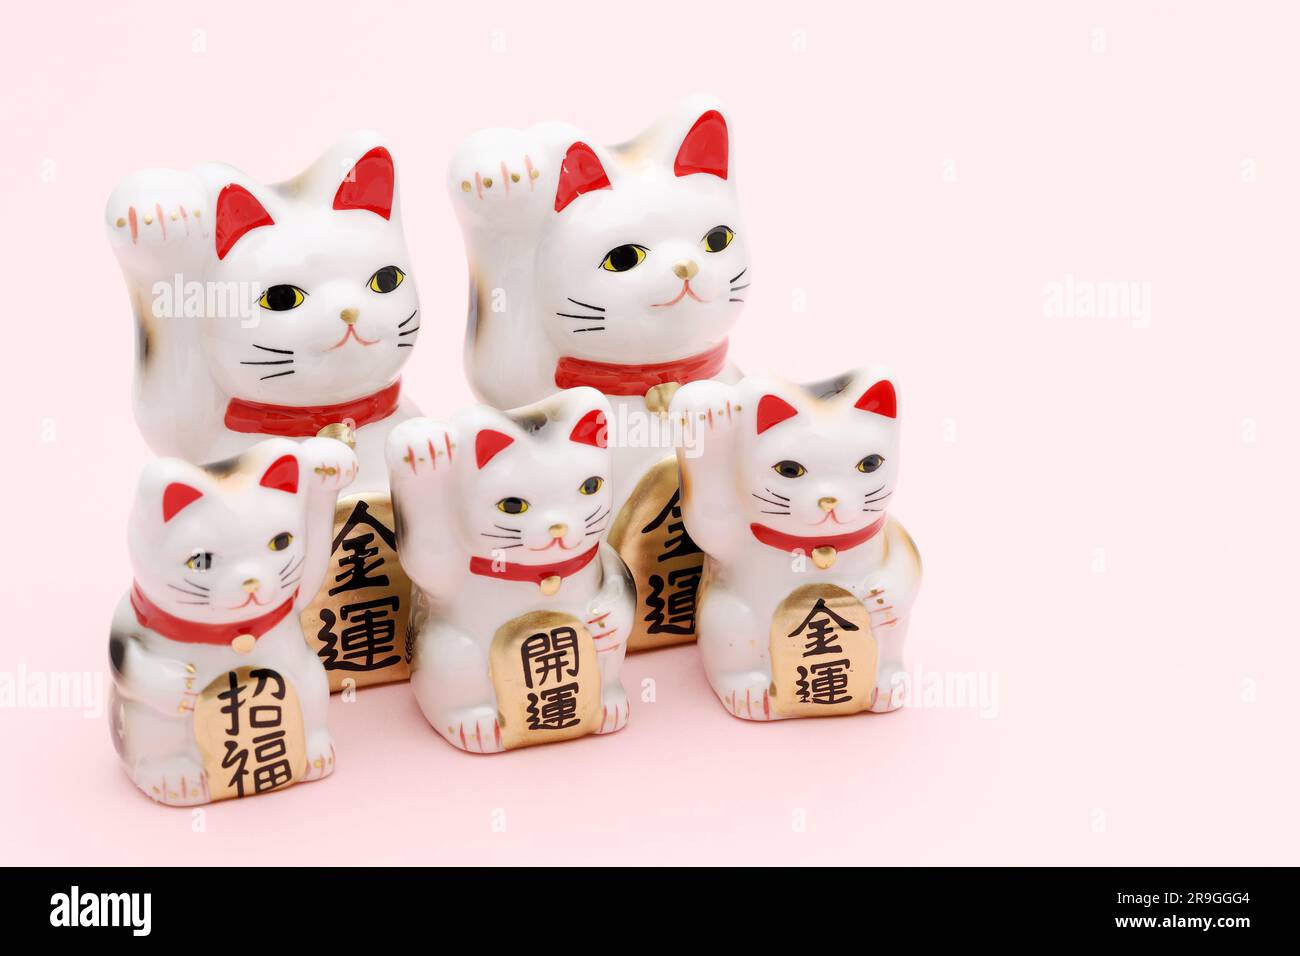 Gatto fortunato giapponese su sfondo rosa, parola giapponese di questa fotografia significa "fortuna migliore, benedizione, fortuna economica" Foto Stock